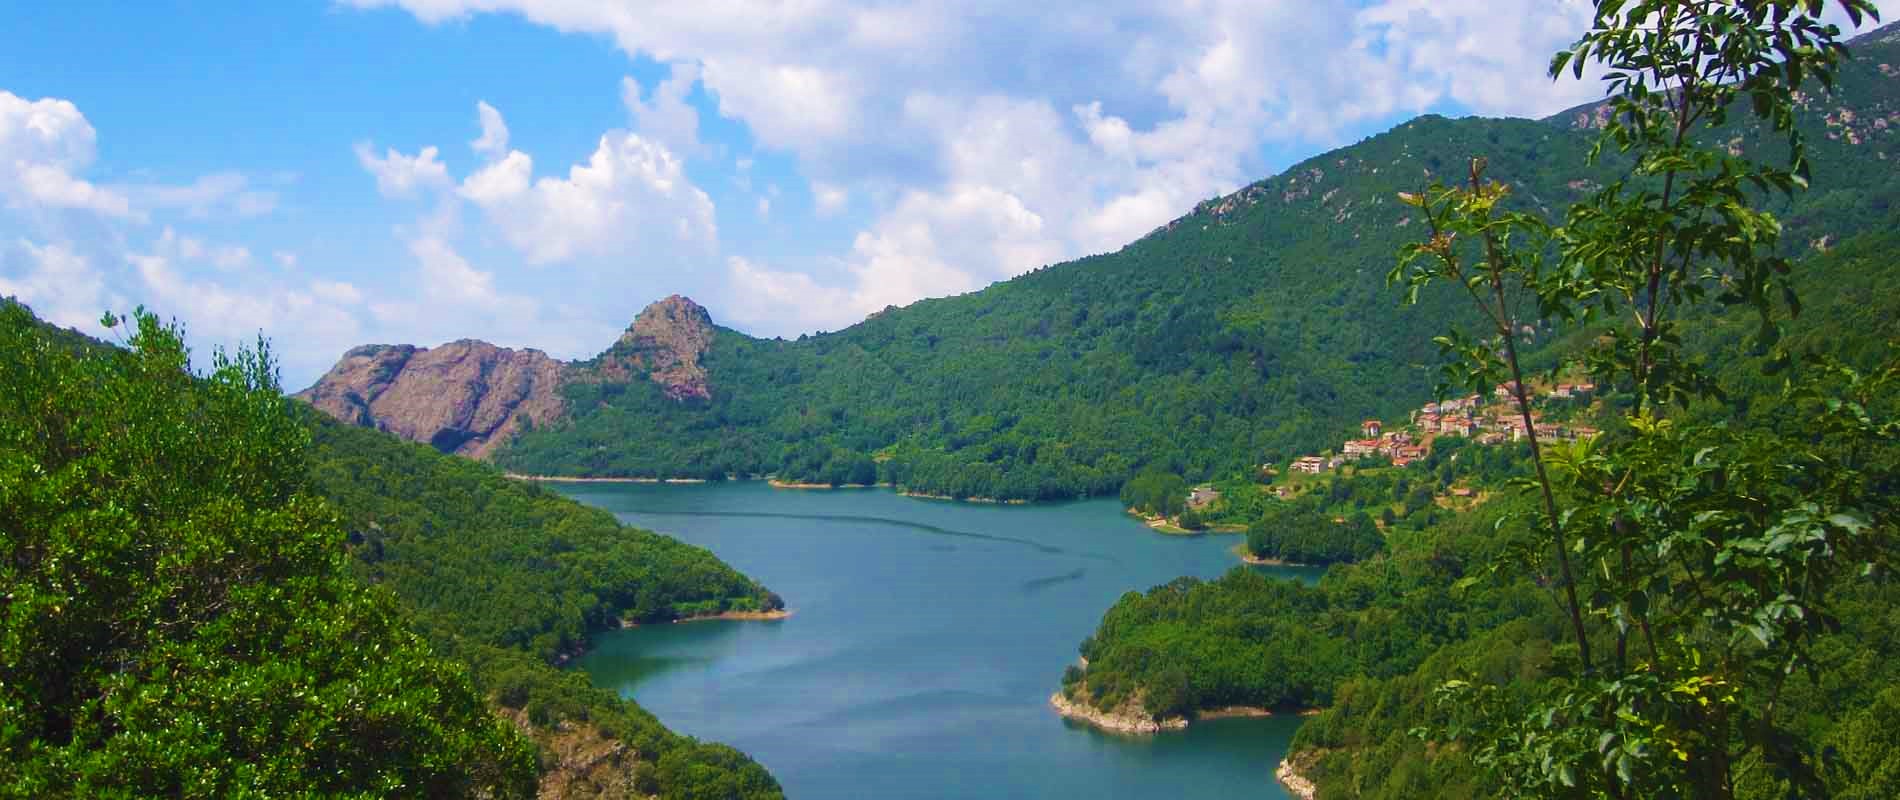 Lac de Tolla - Corse du Sud